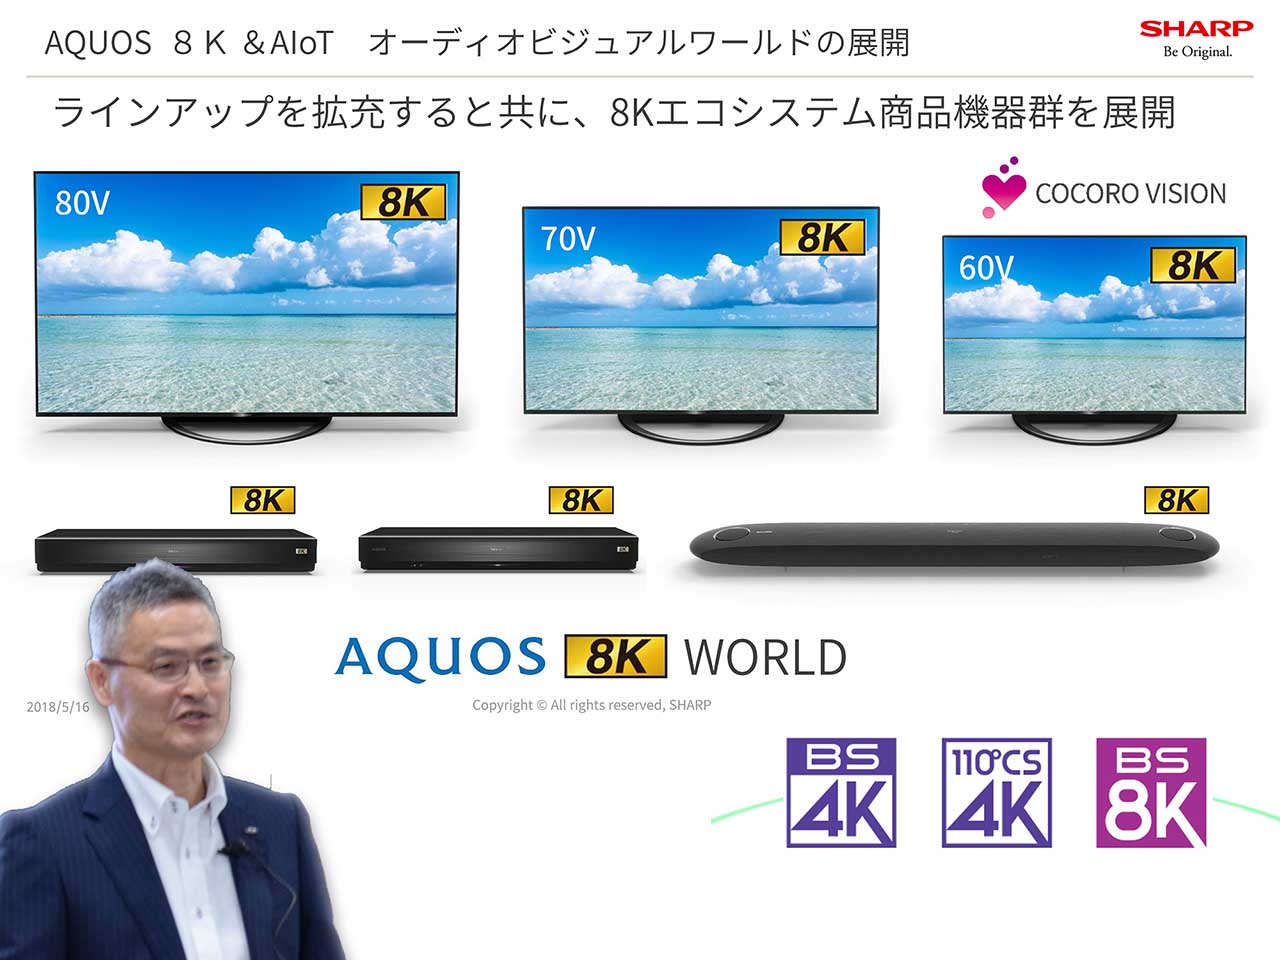 シャープ、年内発売の8Kテレビは60型で約50万円を目指す。8Kチューナは